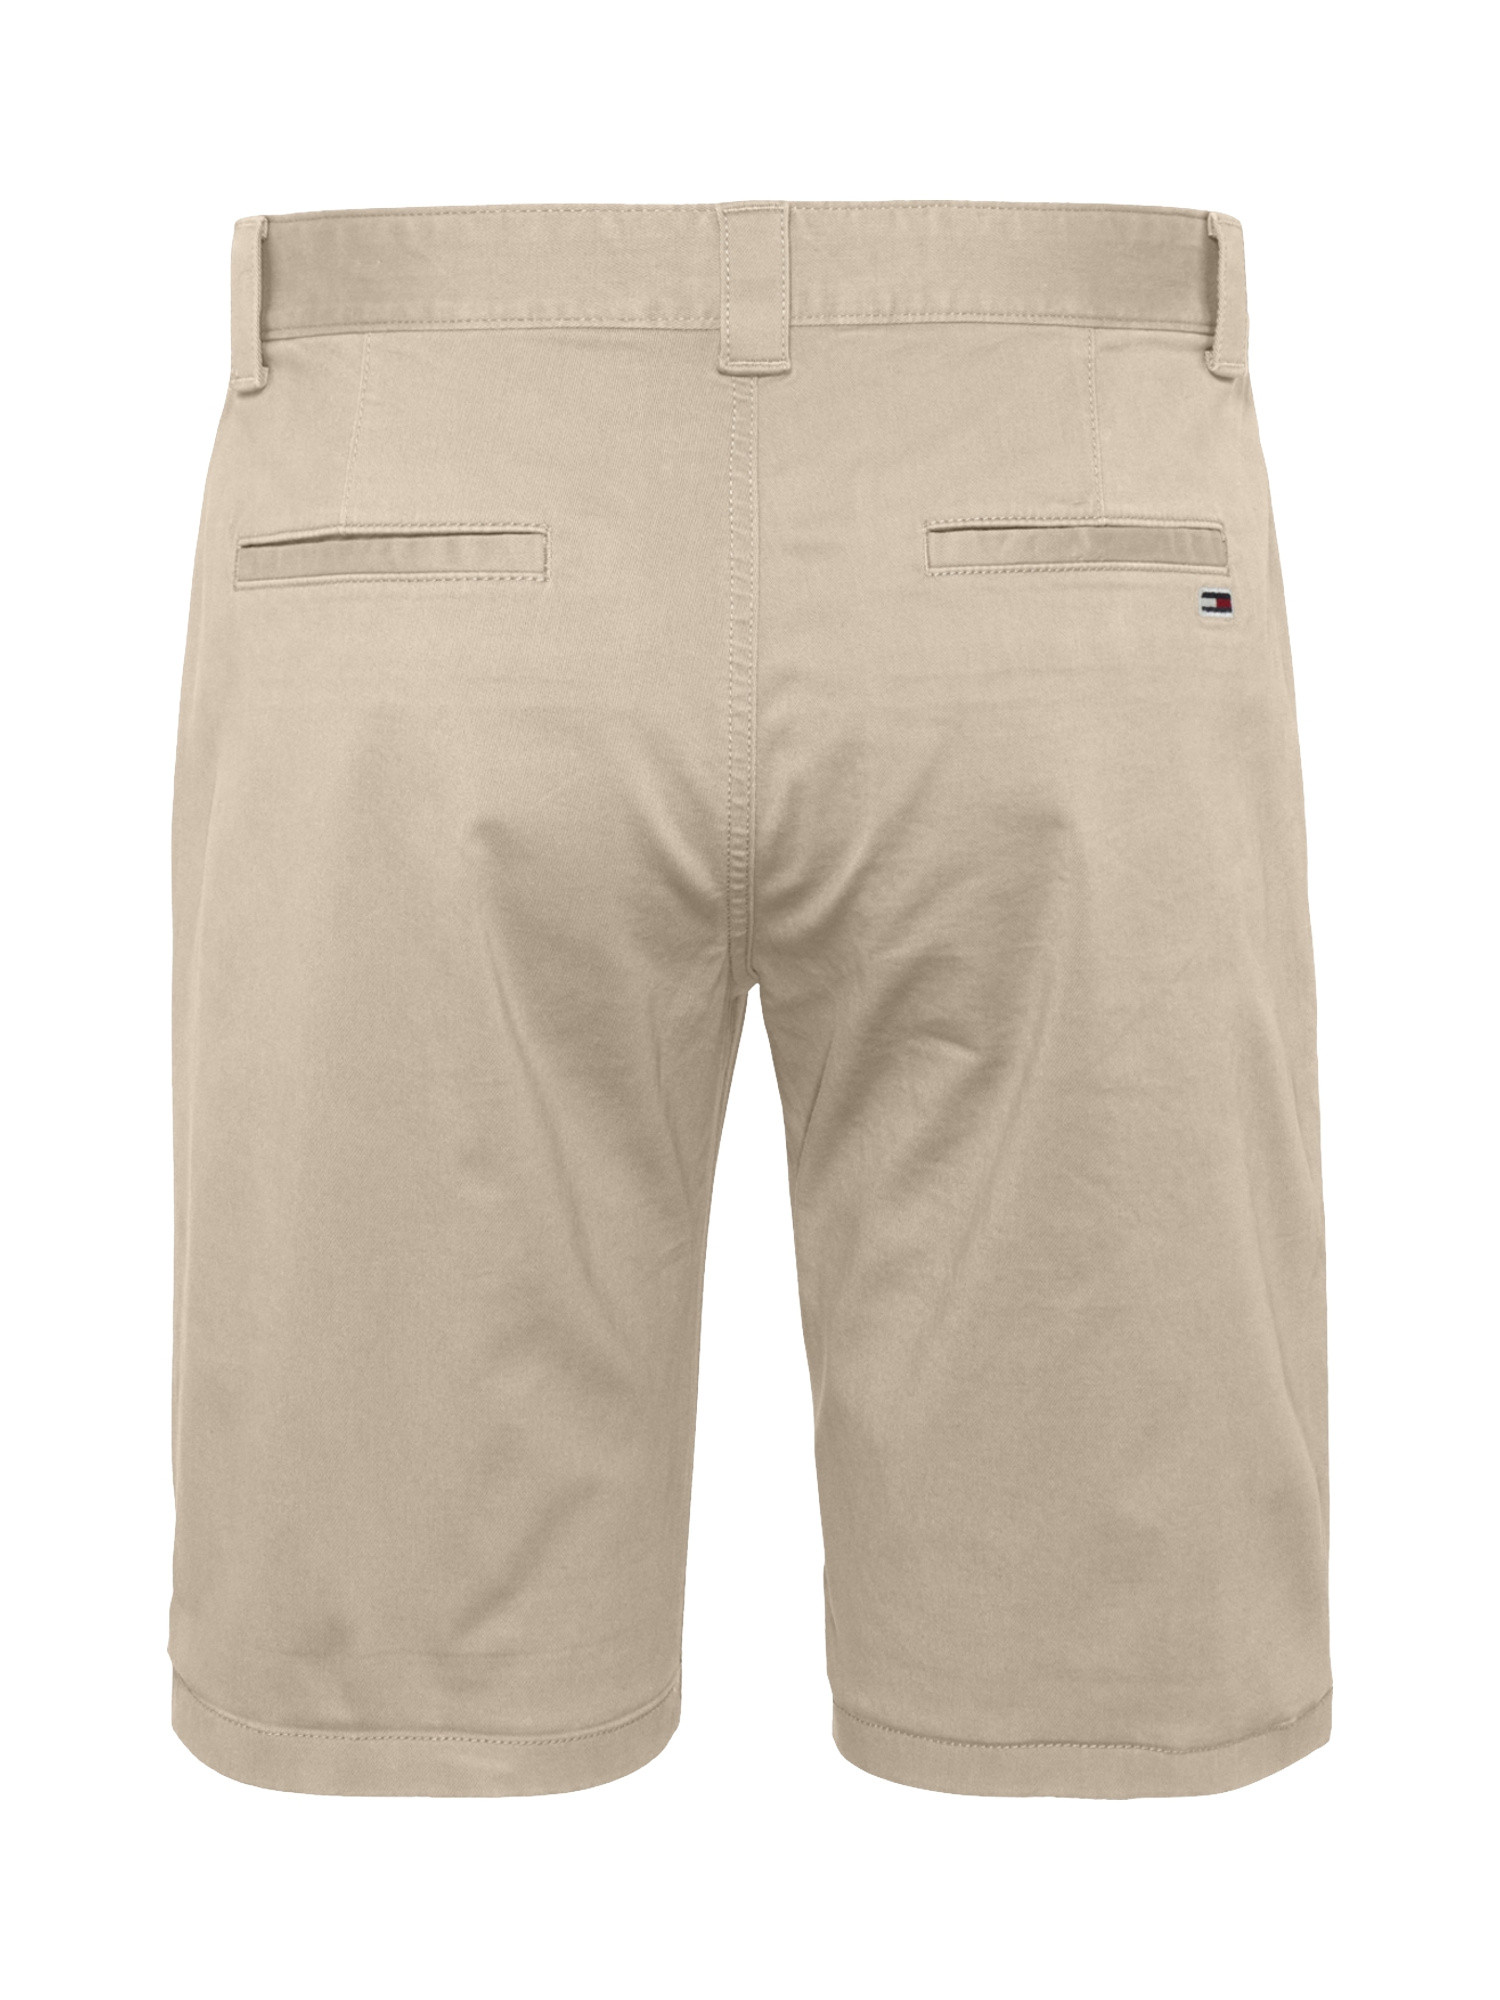 Chino shorts, Beige, large